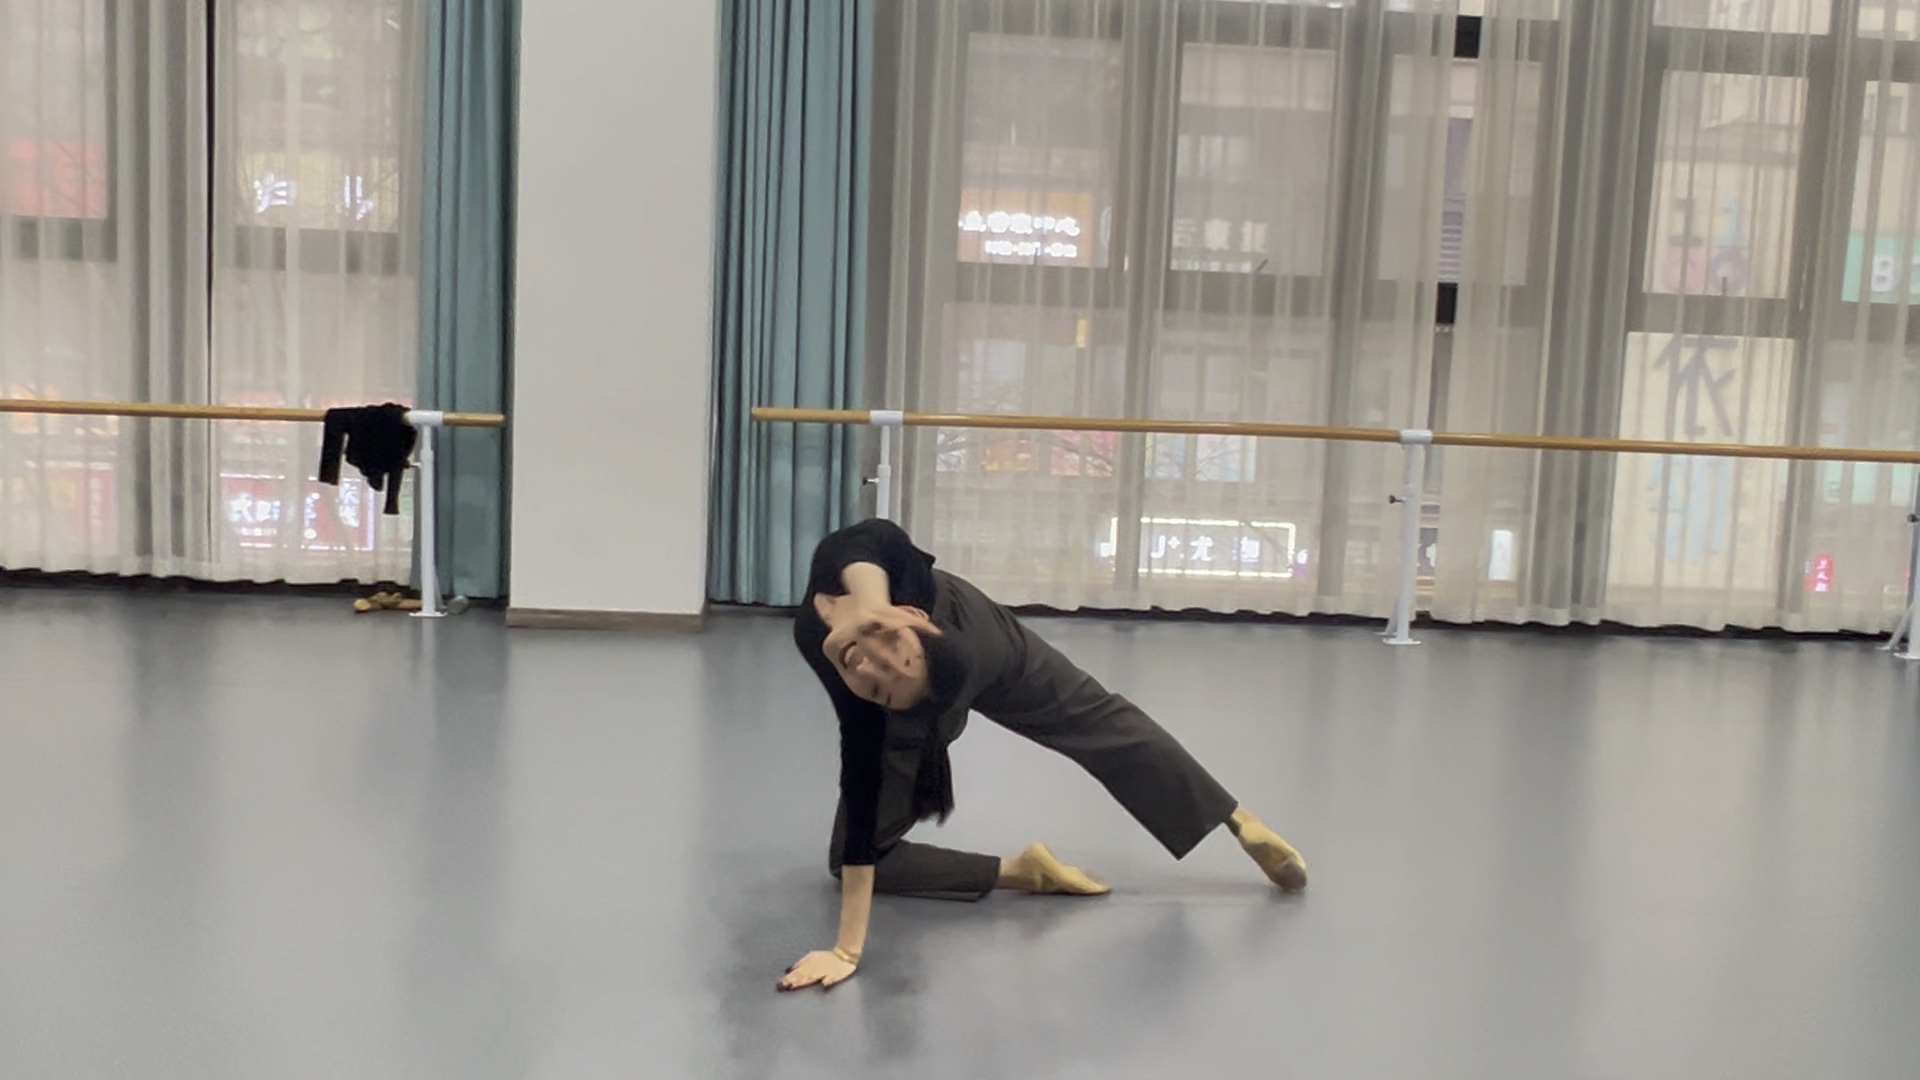 北舞13(下) 抒情组合 北京舞蹈学院中国舞考级教程